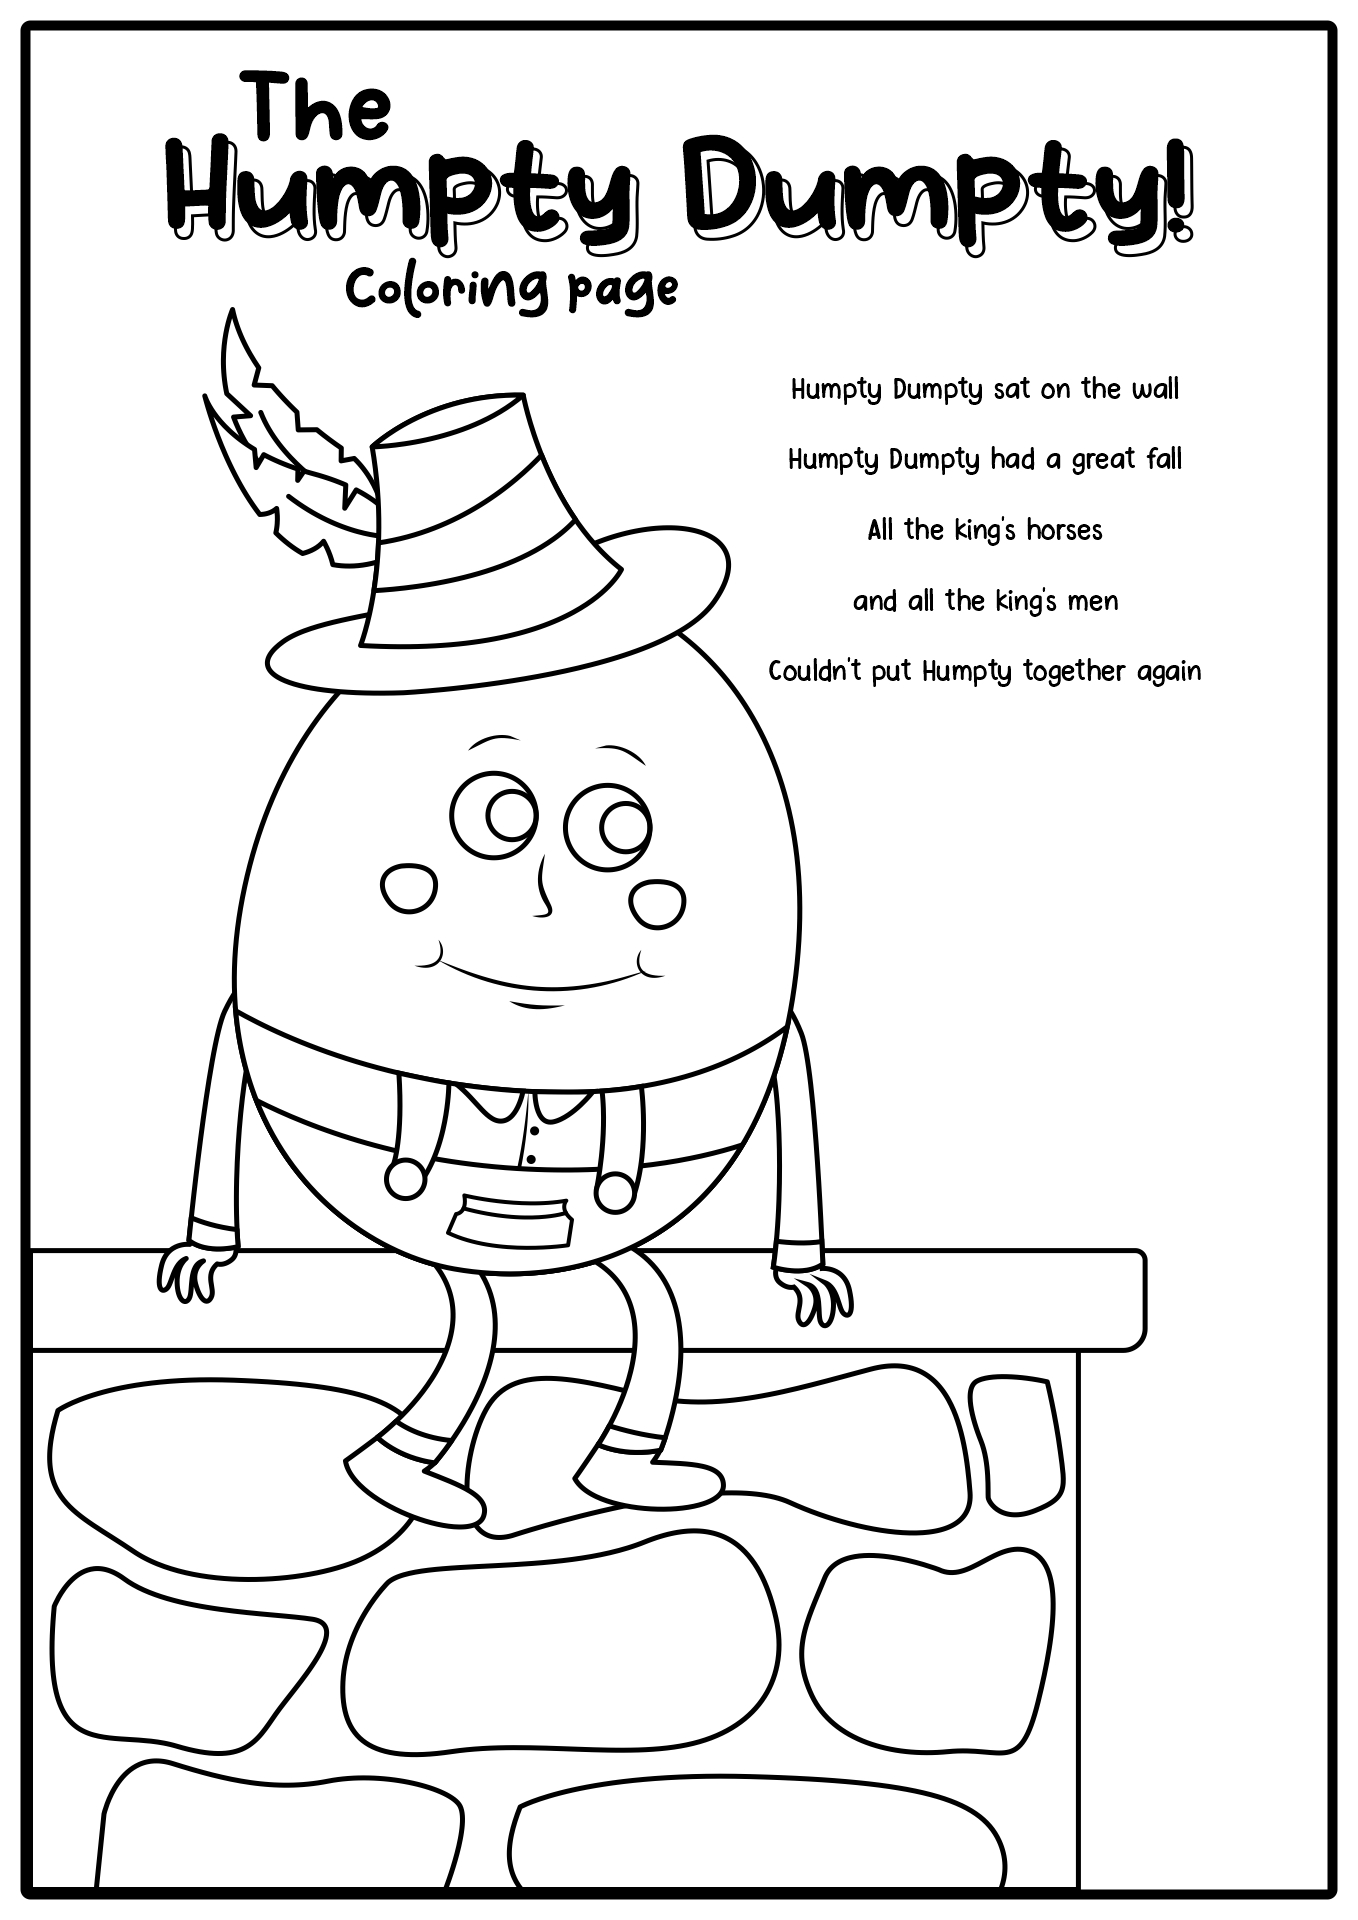 Free Printable Humpty Dumpty Activities For Preschool - Riset